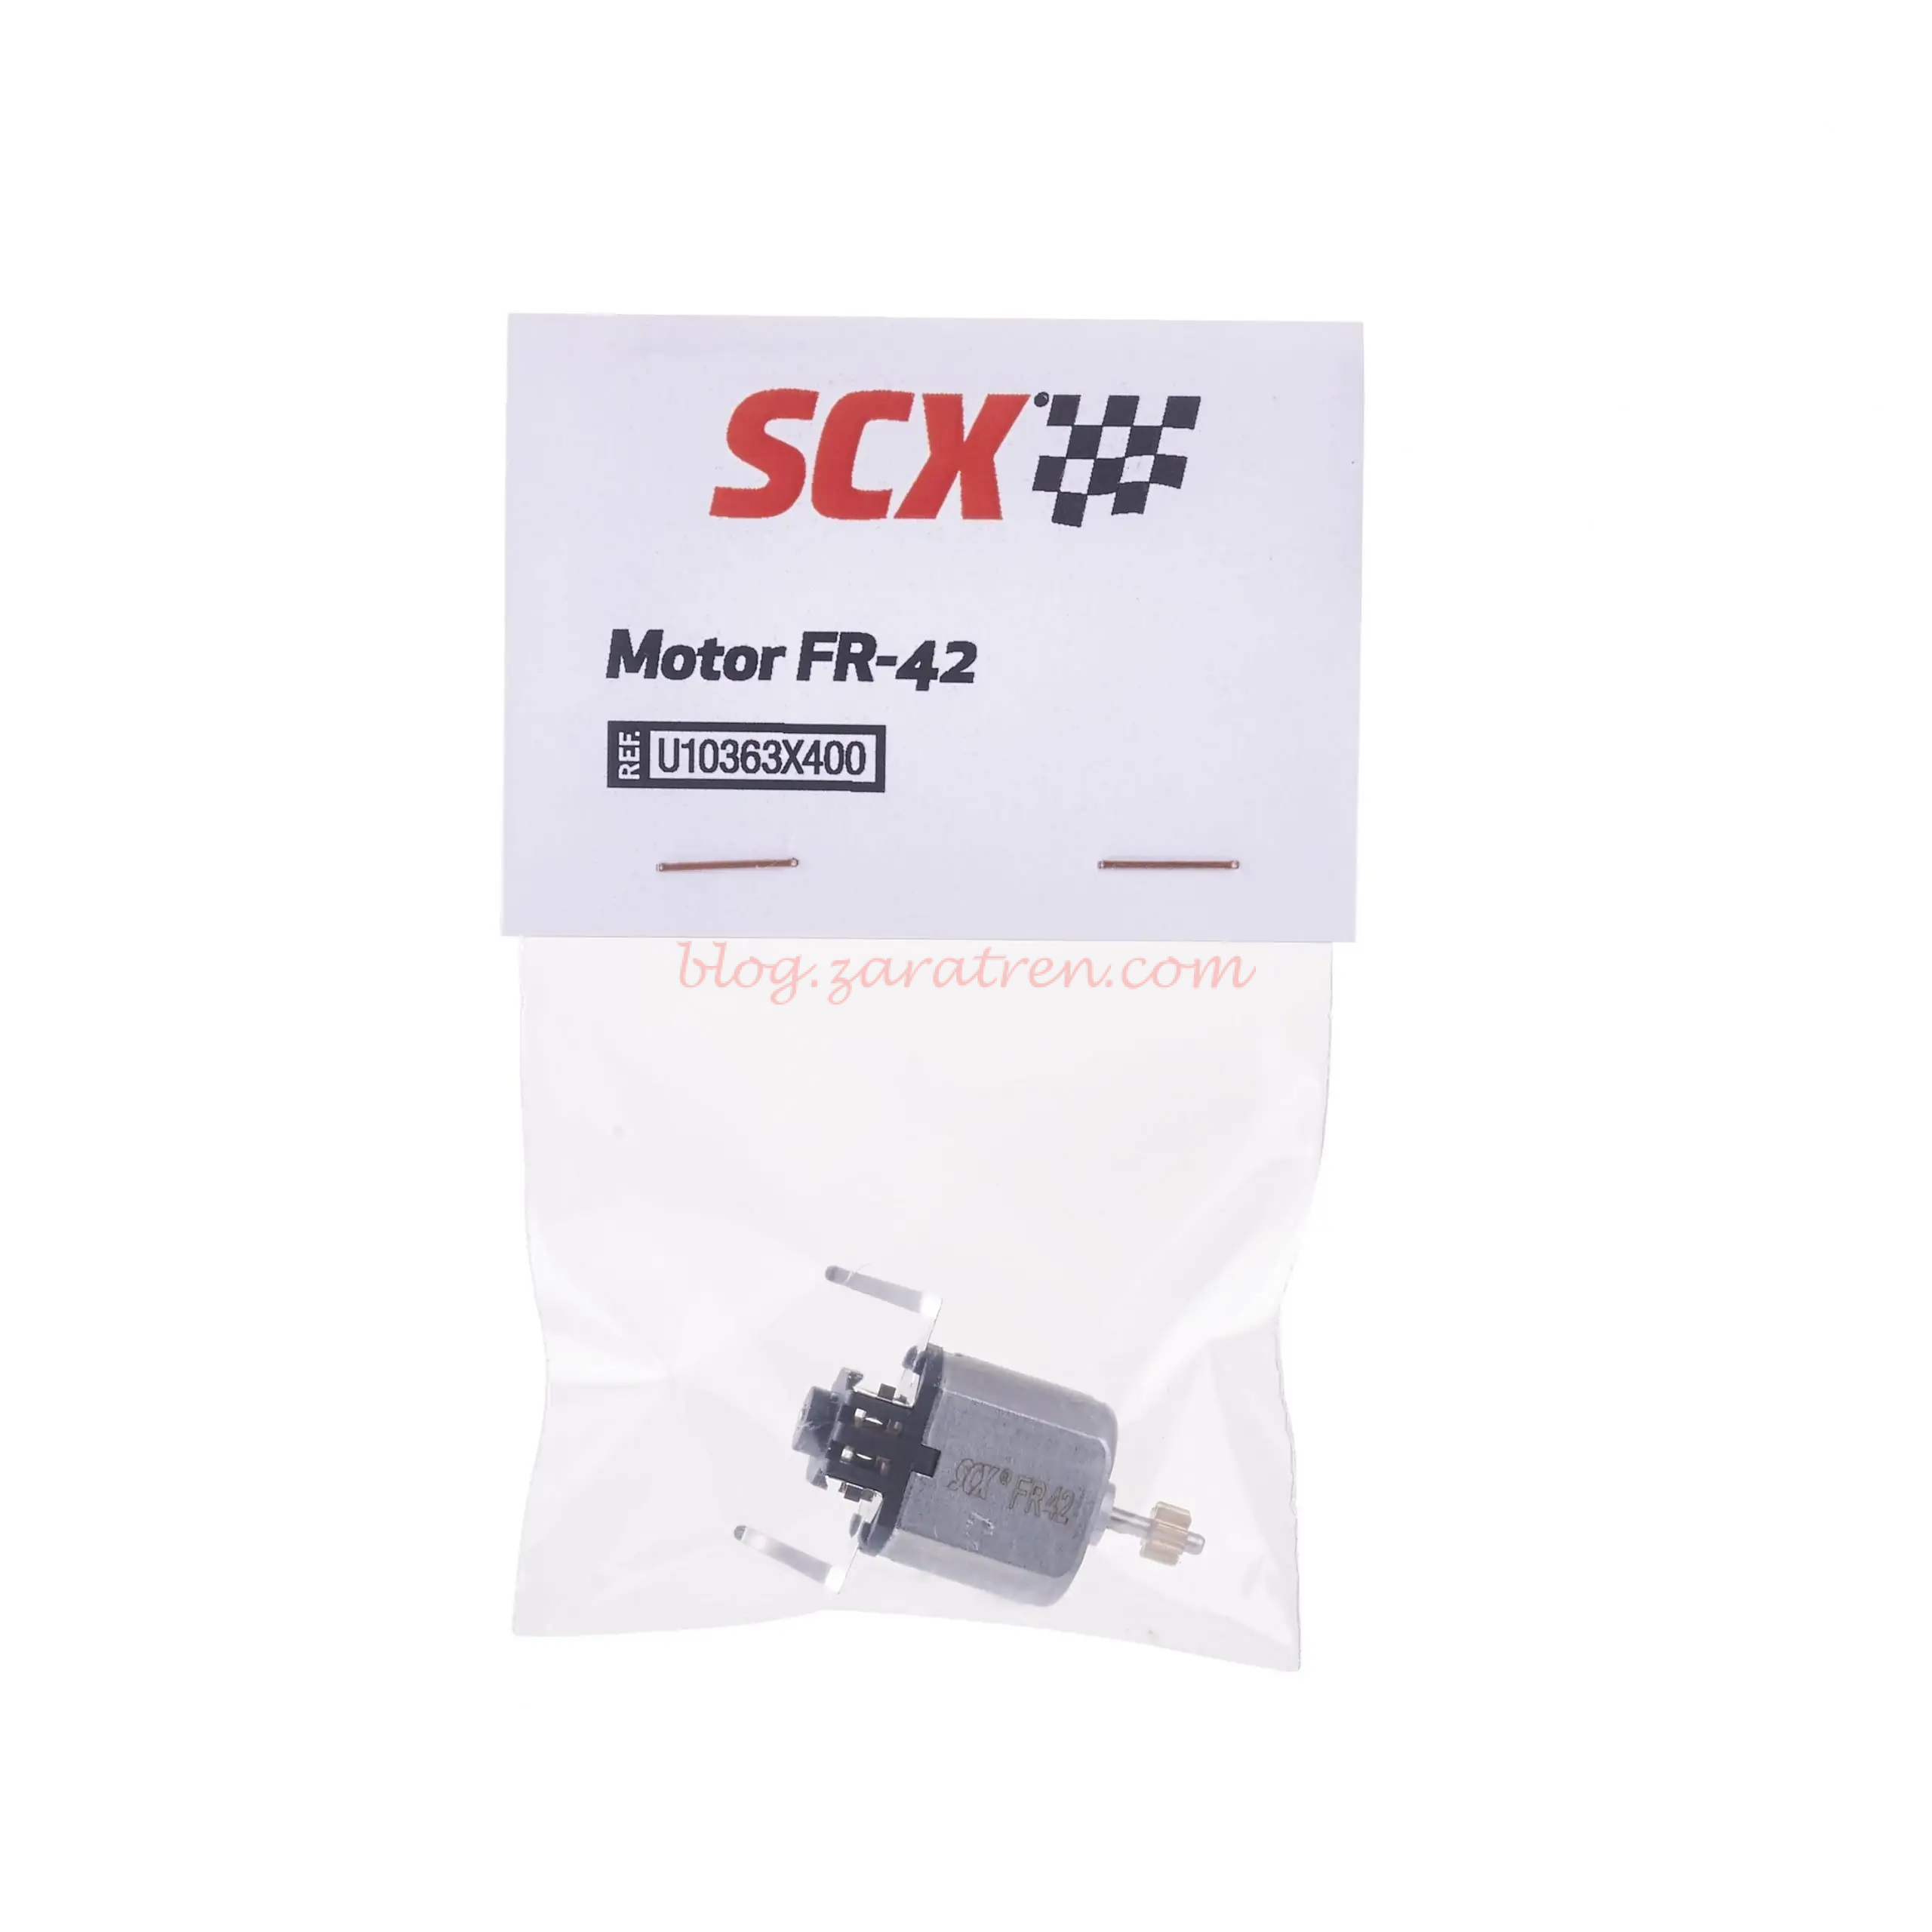 Scalextric – Motor Universal FR-42, Escala 1/32, Ref: U10363X400.